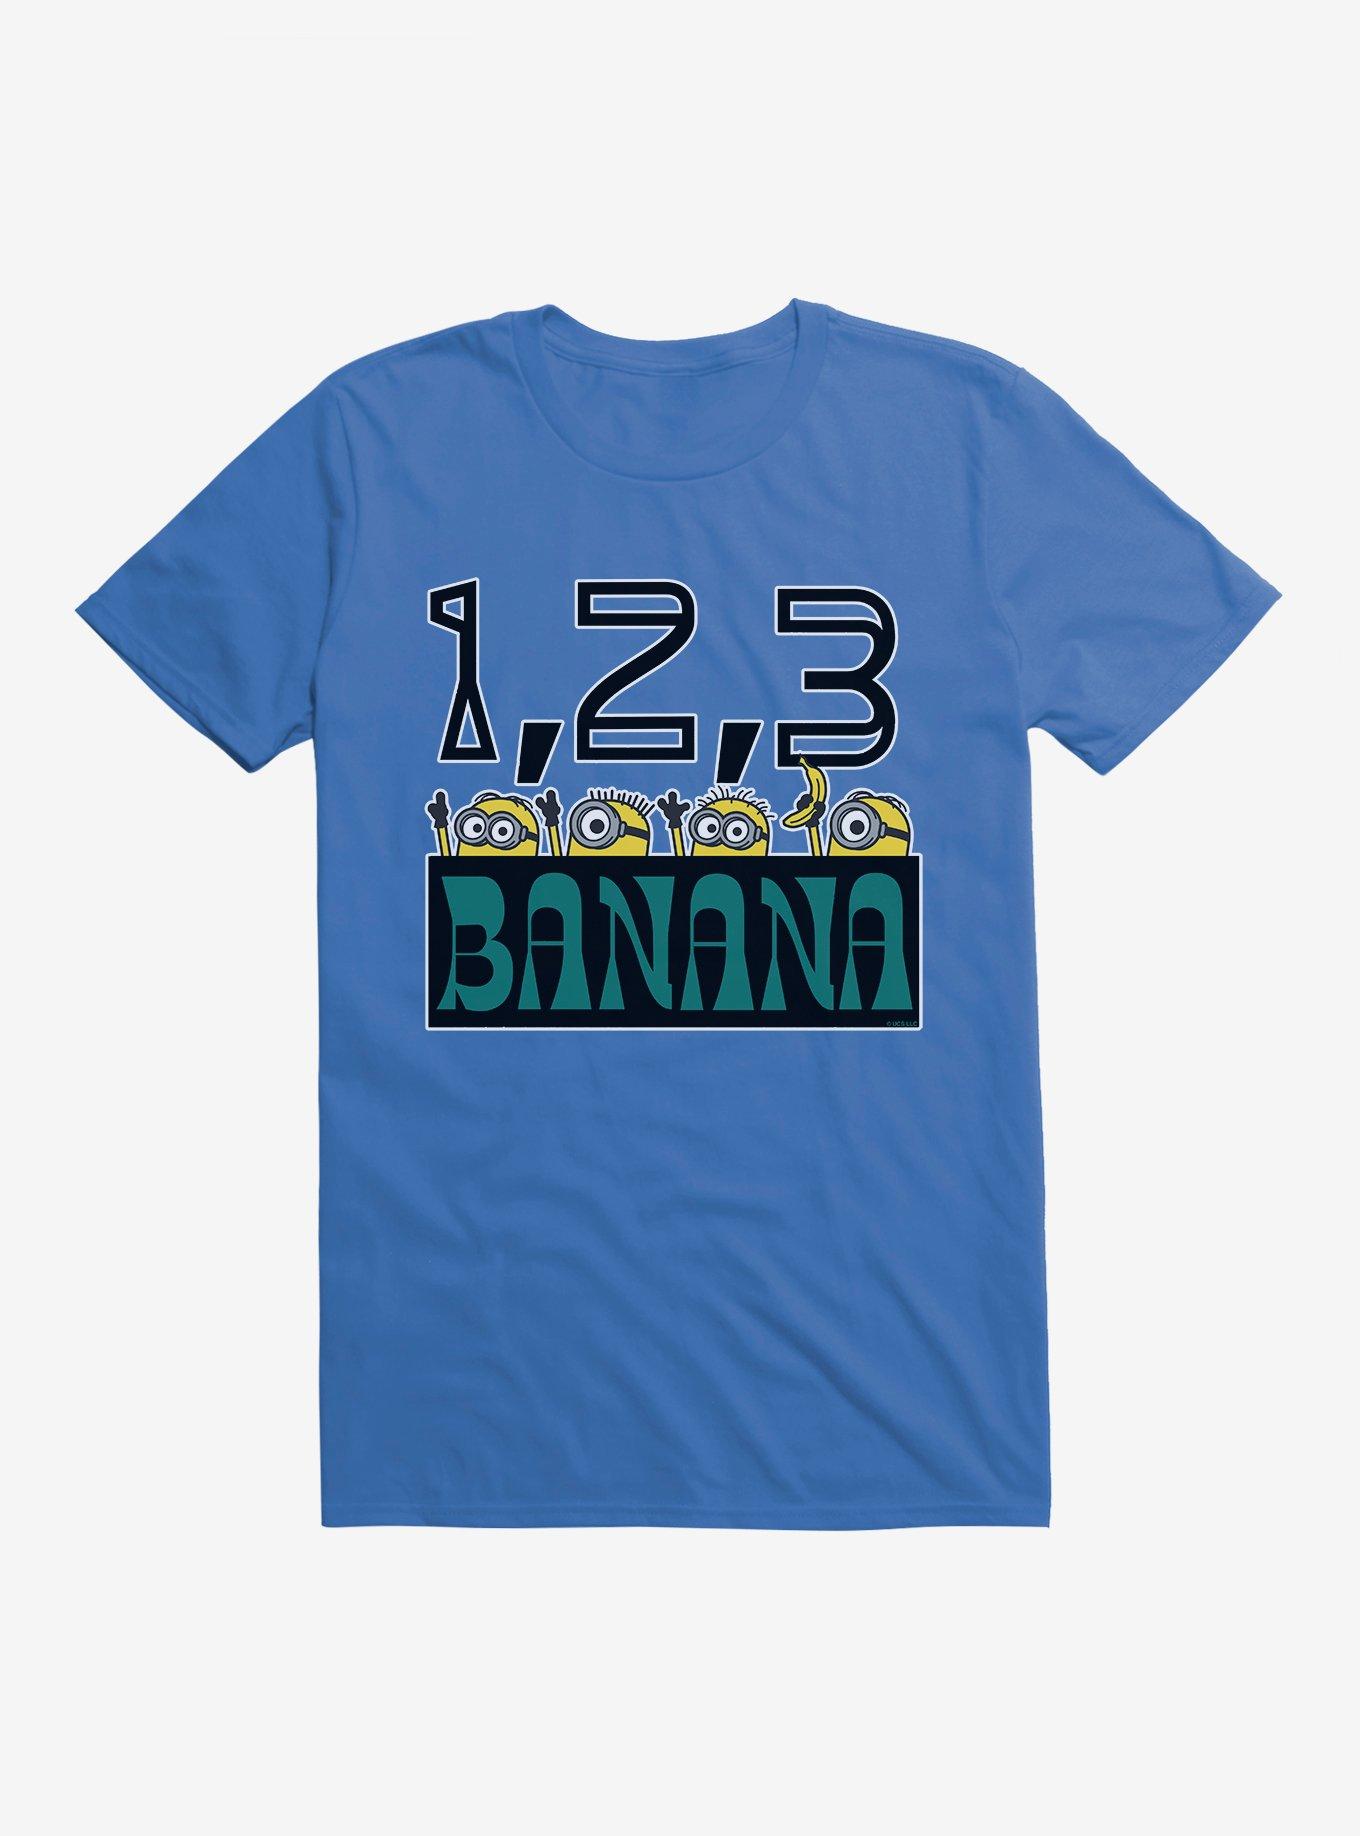 Minions Banana T-Shirt, ROYAL BLUE, hi-res